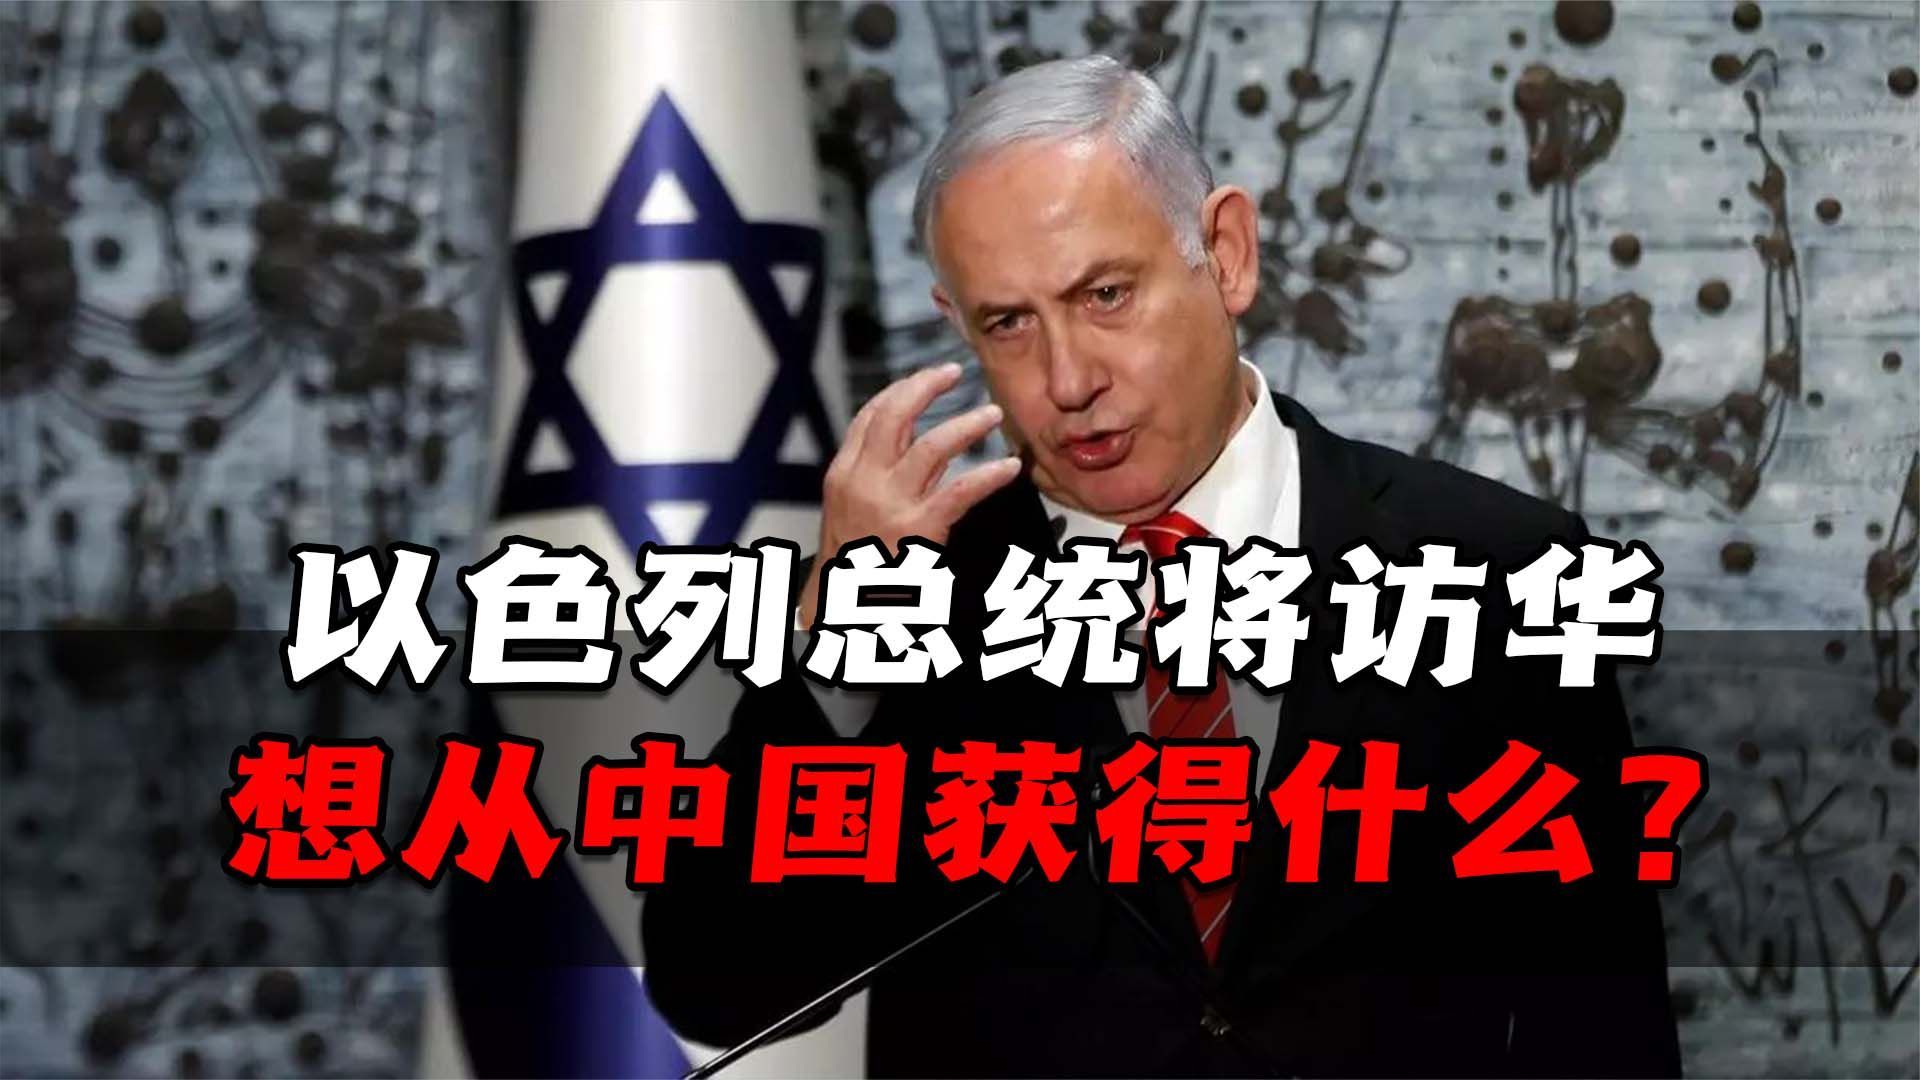 去年11月13日，以色列总统赫尔佐格授权内塔尼亚胡组建新政府。